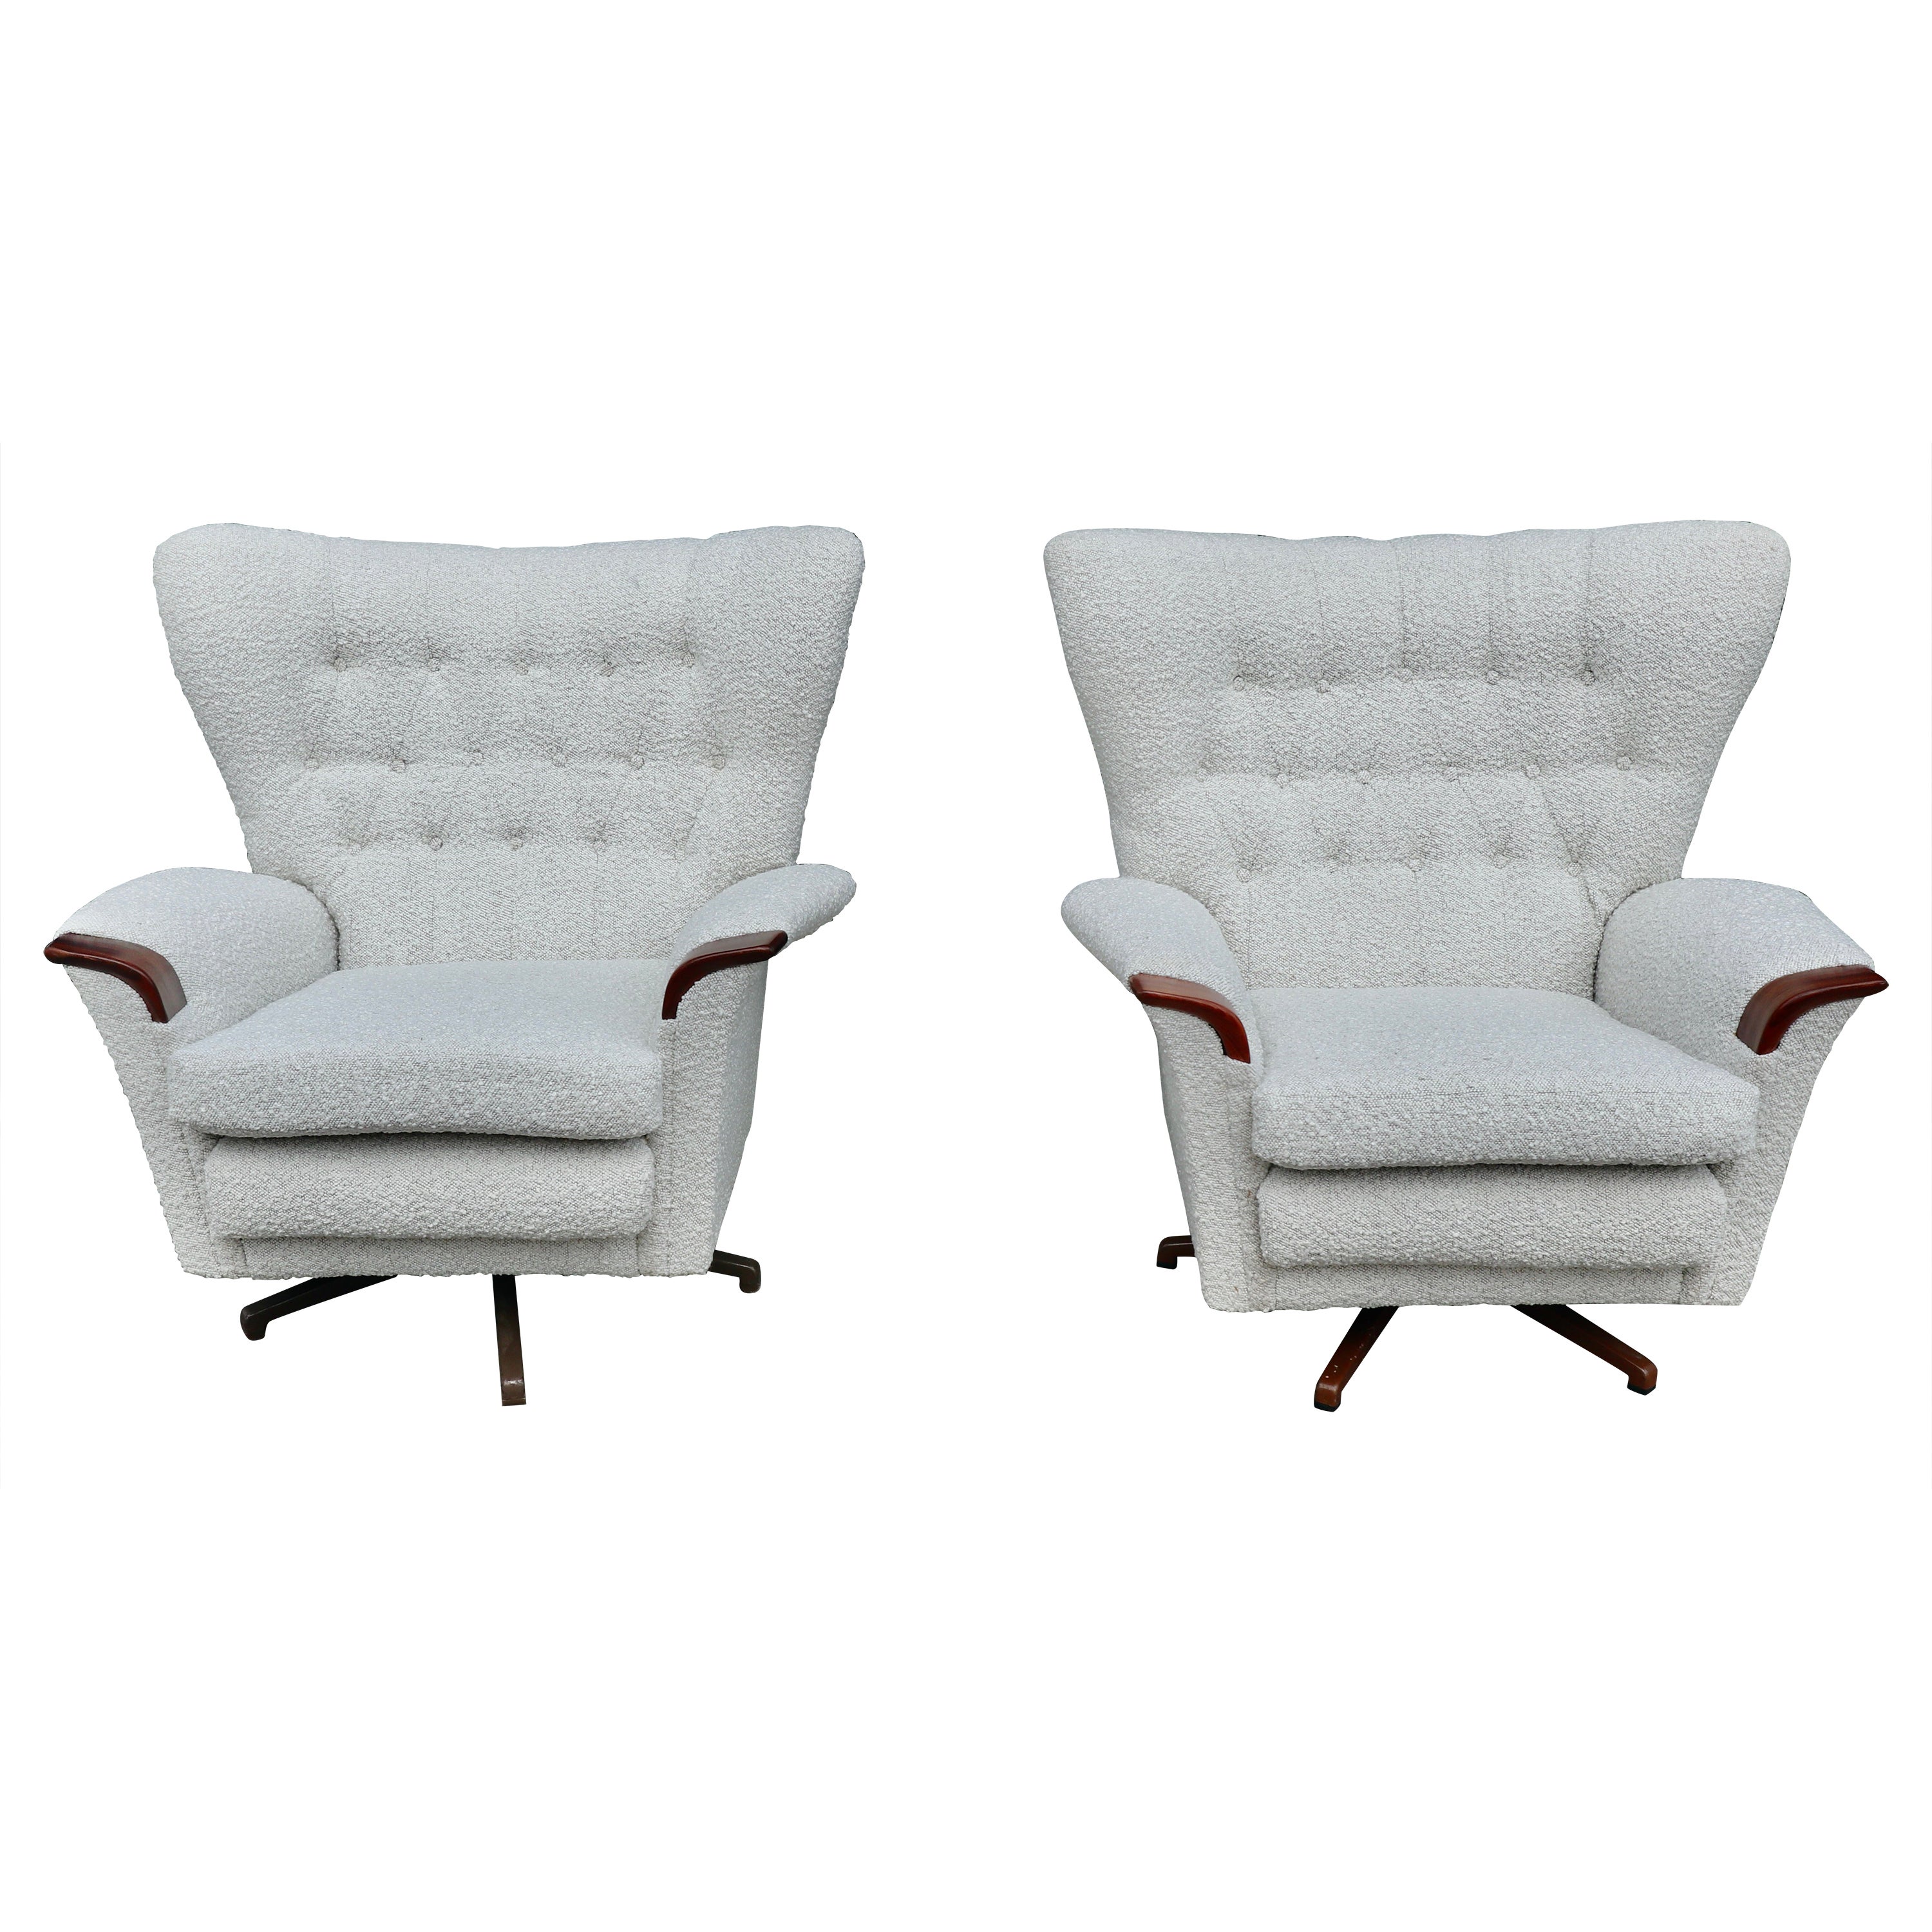 G Plan Furniture Lounge Chairs